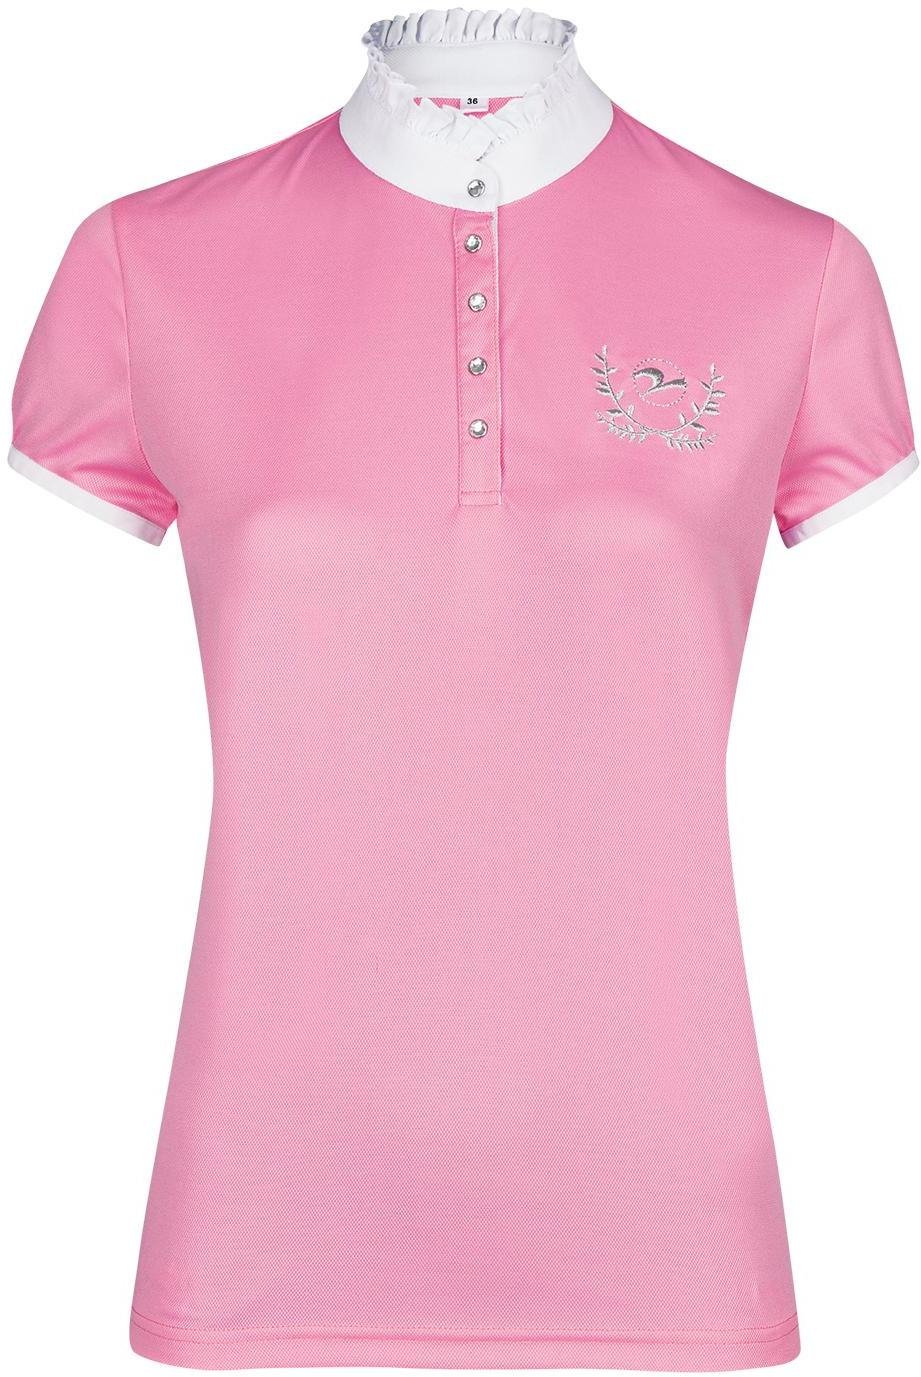 Image of BUSSE Turniershirt Aalborg Damen - light pink